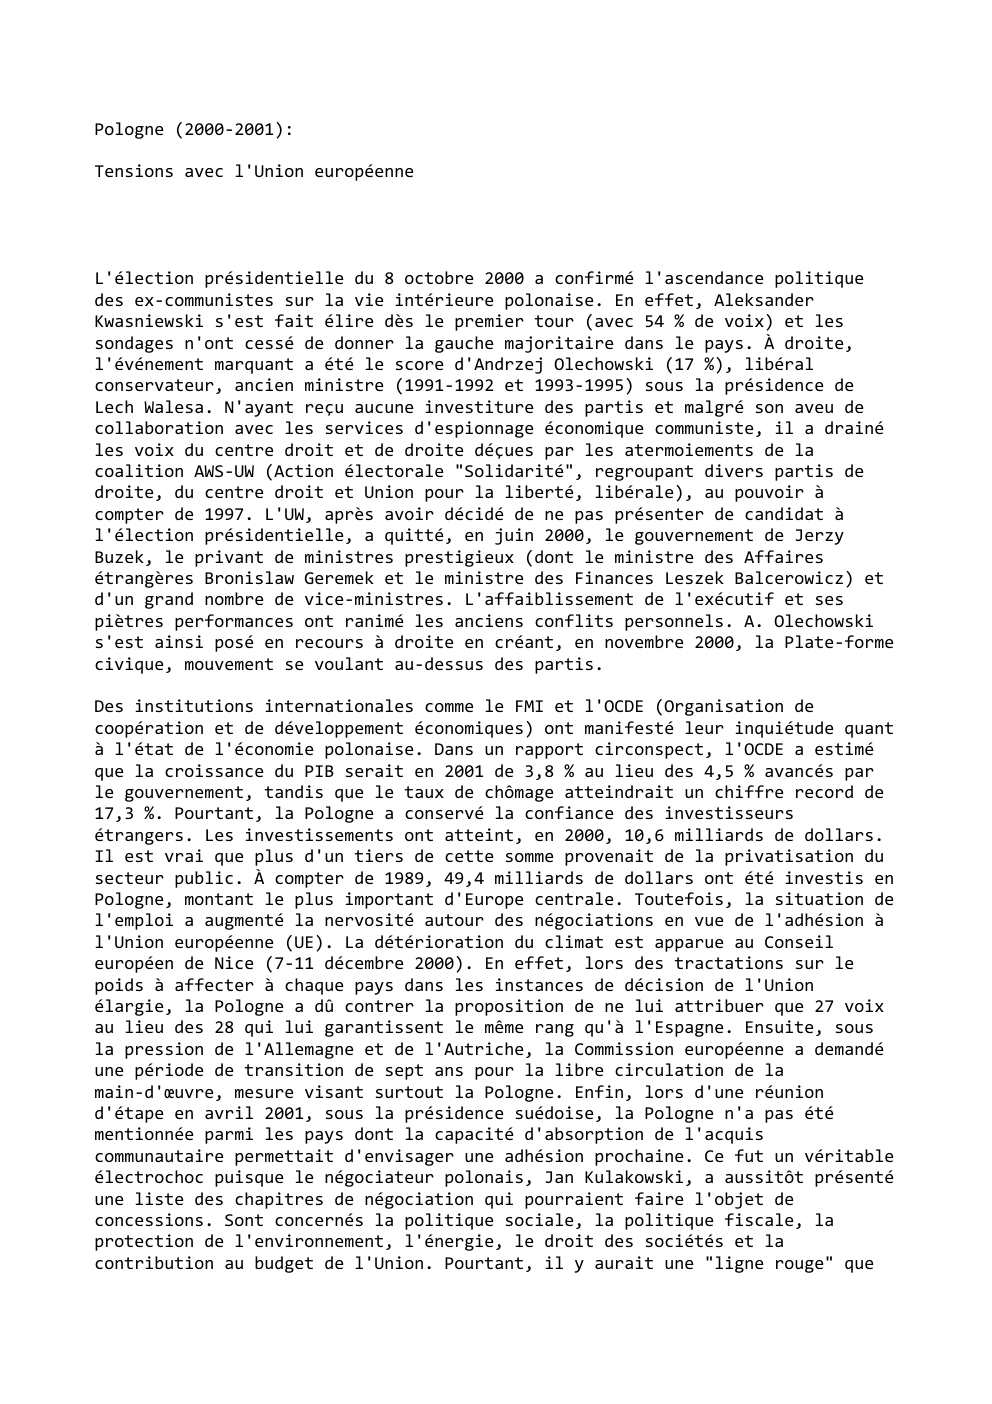 Prévisualisation du document Pologne (2000-2001):
Tensions avec l'Union européenne

L'élection présidentielle du 8 octobre 2000 a confirmé l'ascendance politique
des ex-communistes sur la...